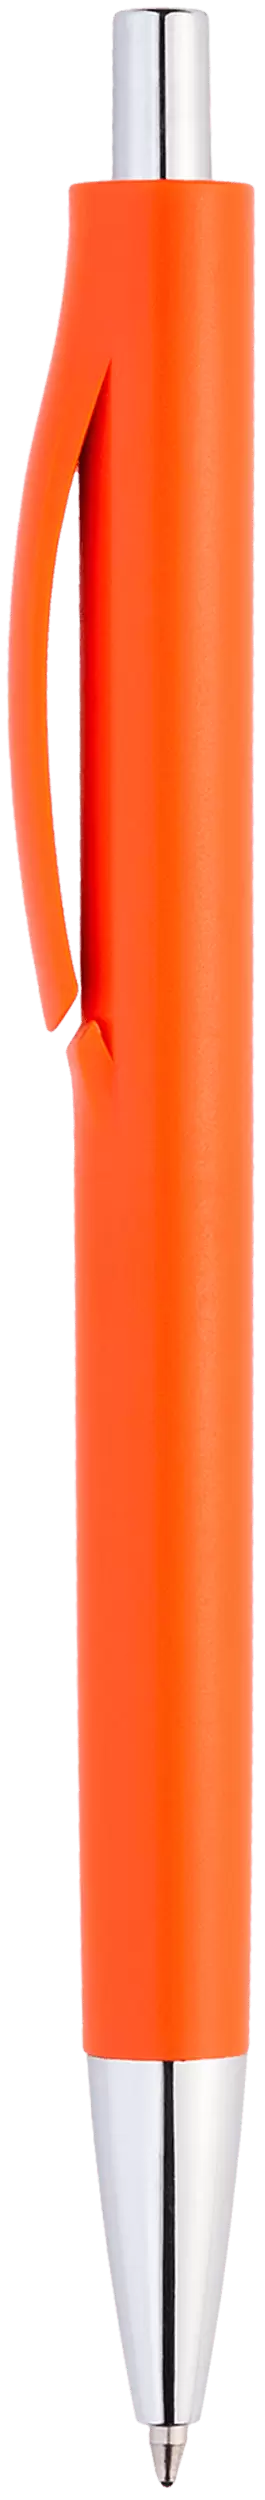 Ручка IGLA CHROME Оранжевая 1032.05